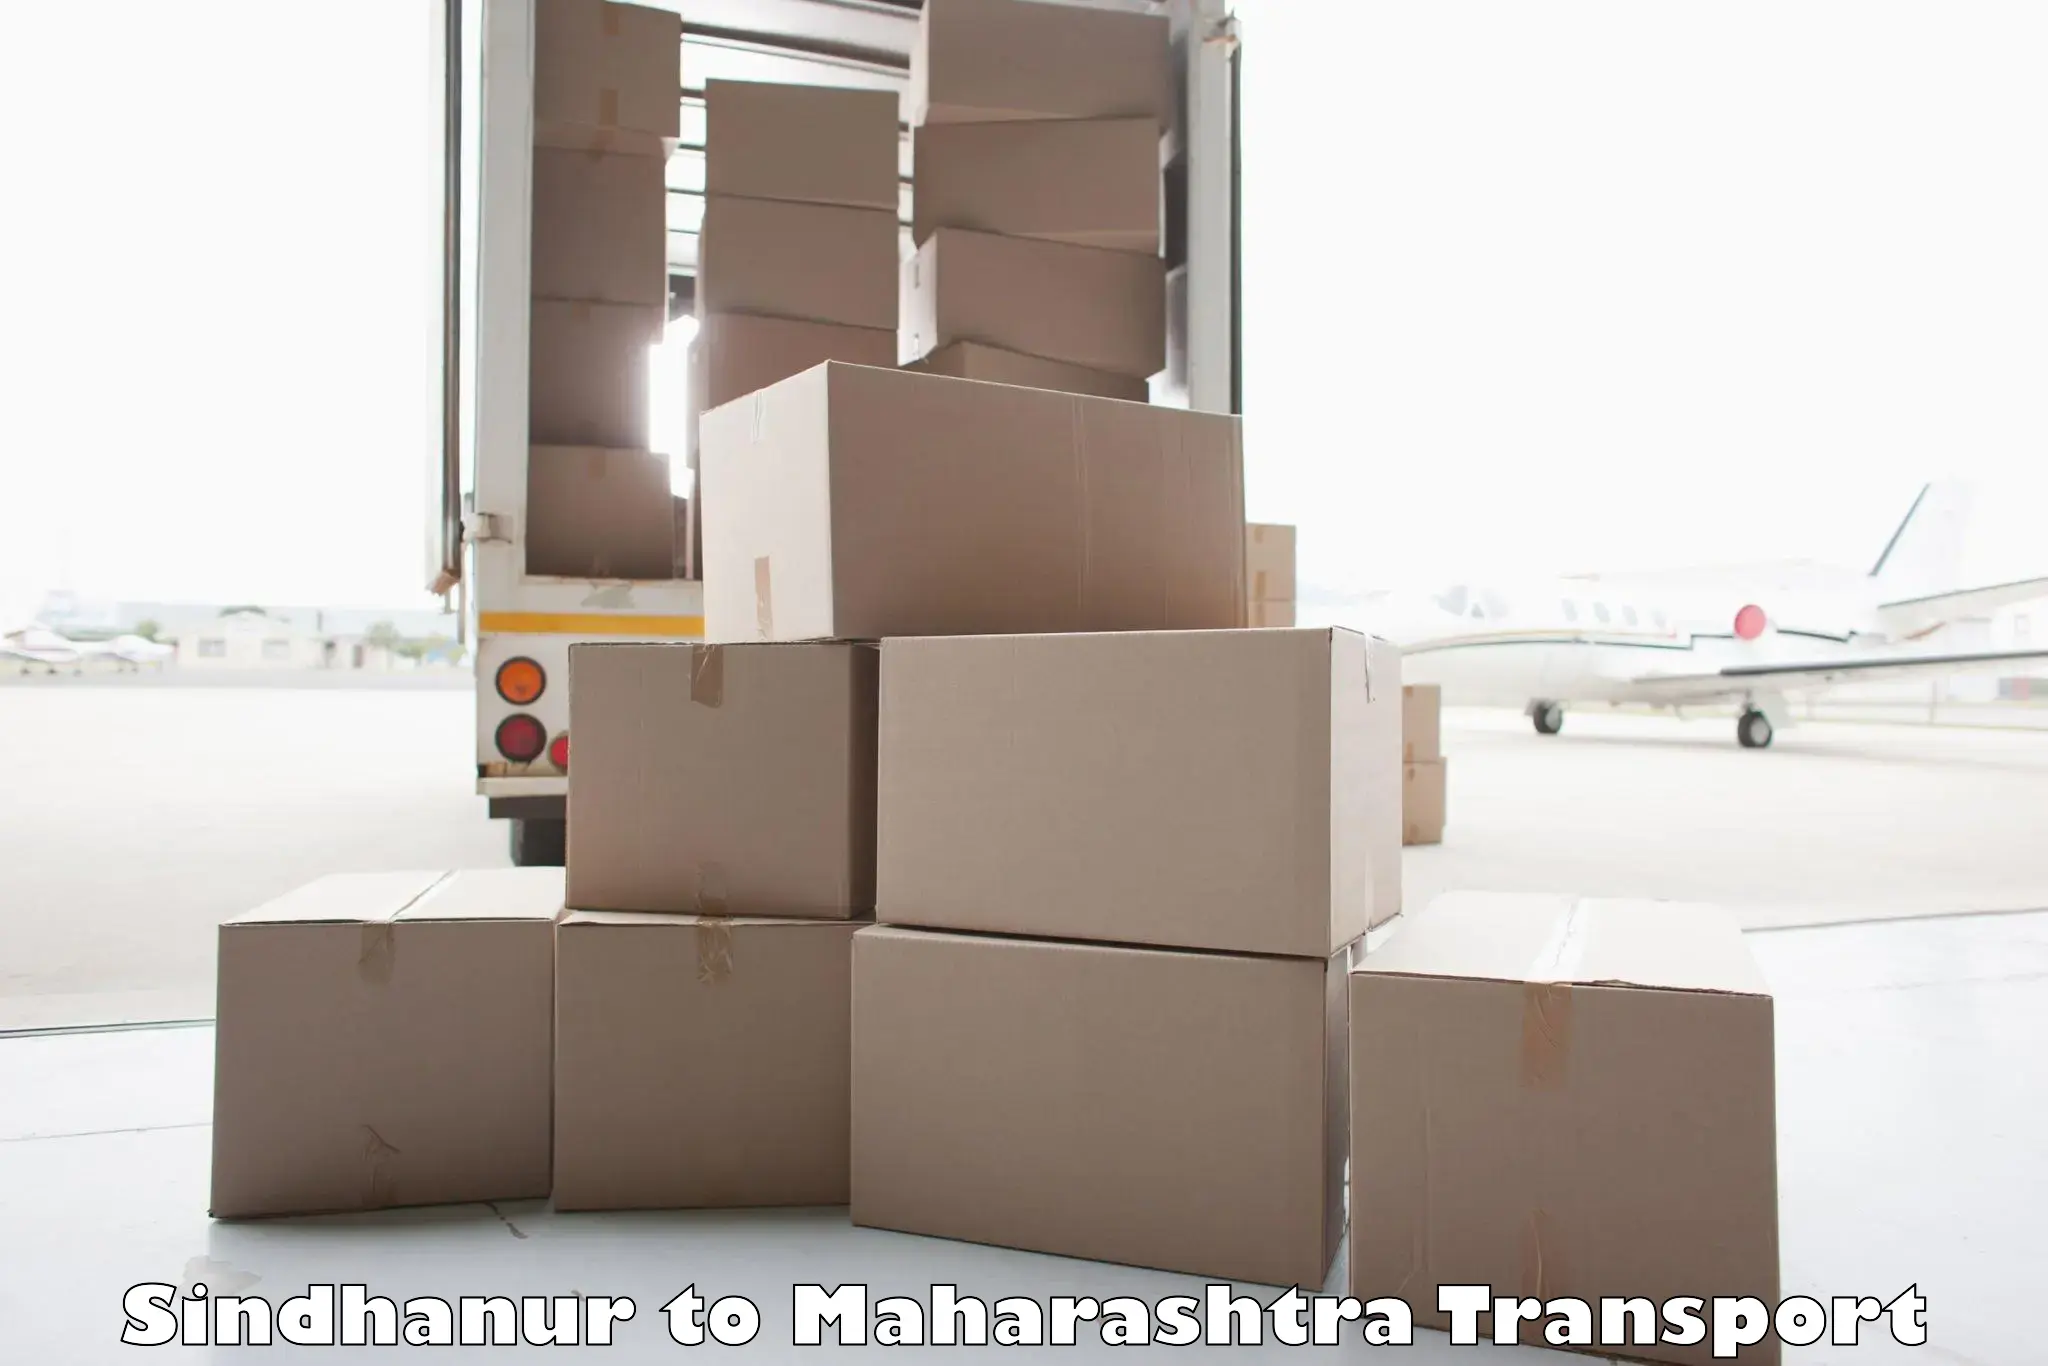 Transport services Sindhanur to Tata Institute of Social Sciences Mumbai